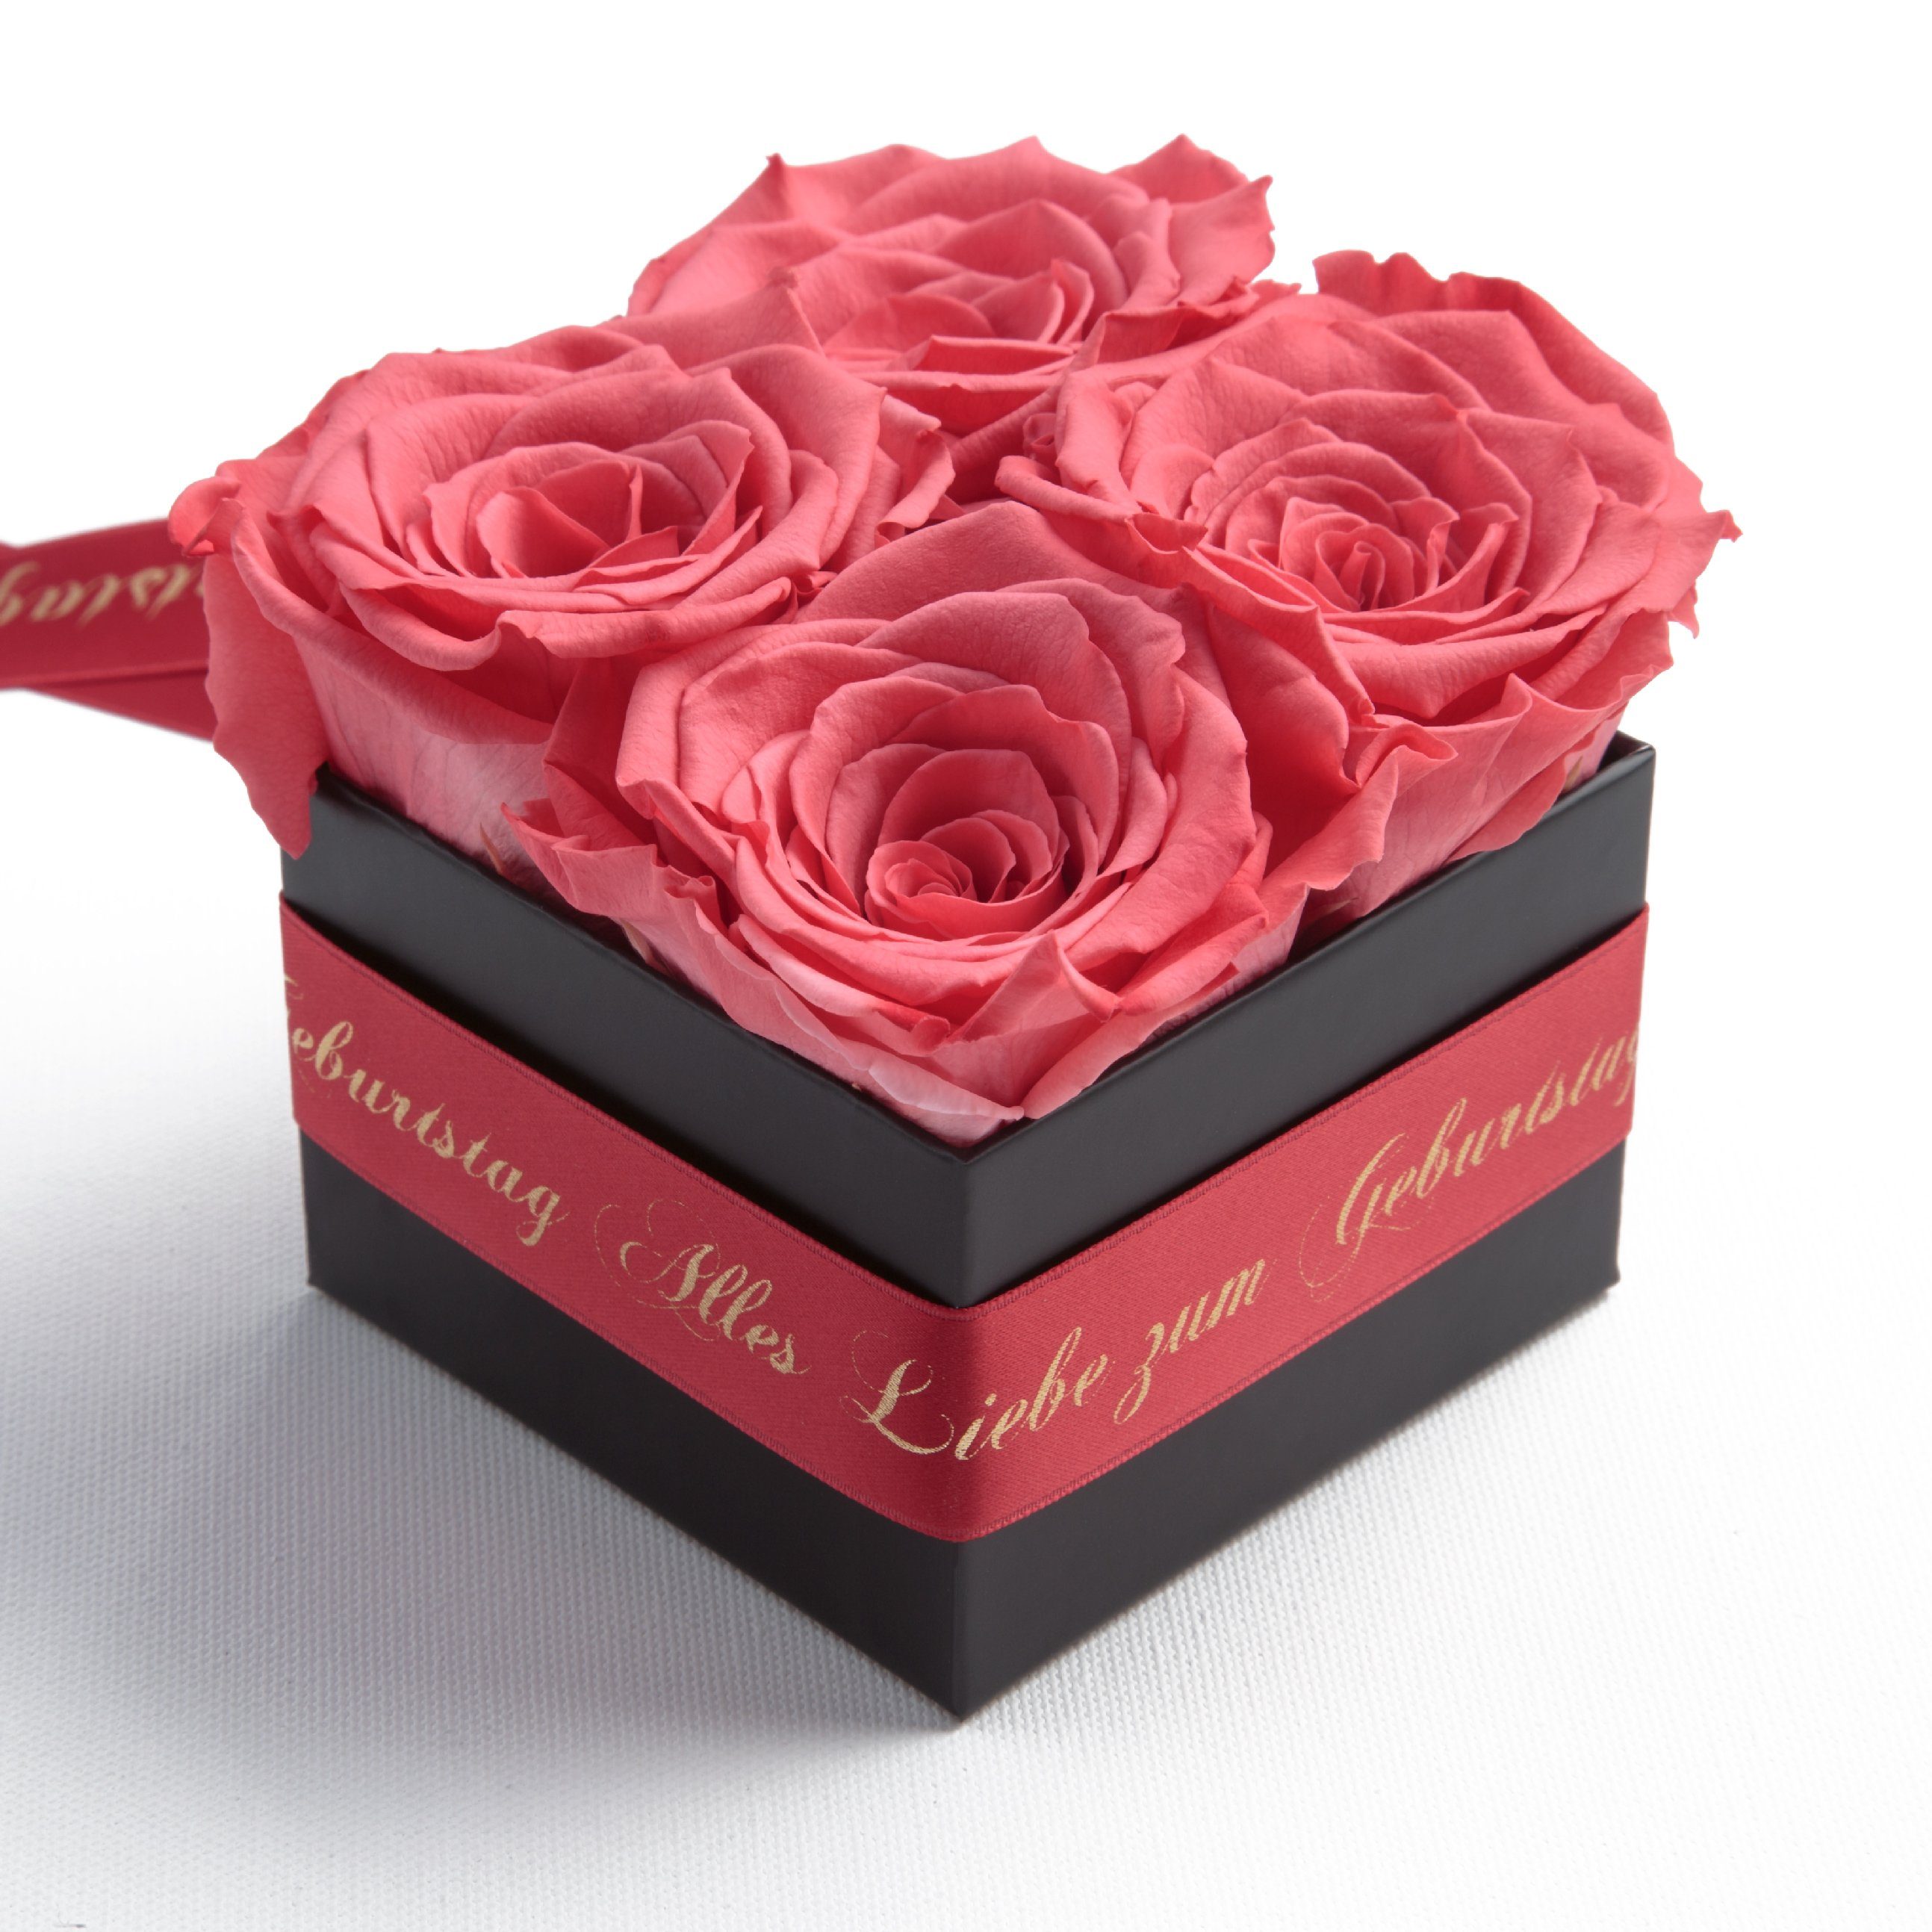 Korall Alles Dekoobjekt St), Rosen Geburtstag SCHULZ zum Frauen (1 Heidelberg echte Echte Rosen konservierte ROSEMARIE Rosenbox Liebe Geschenk für